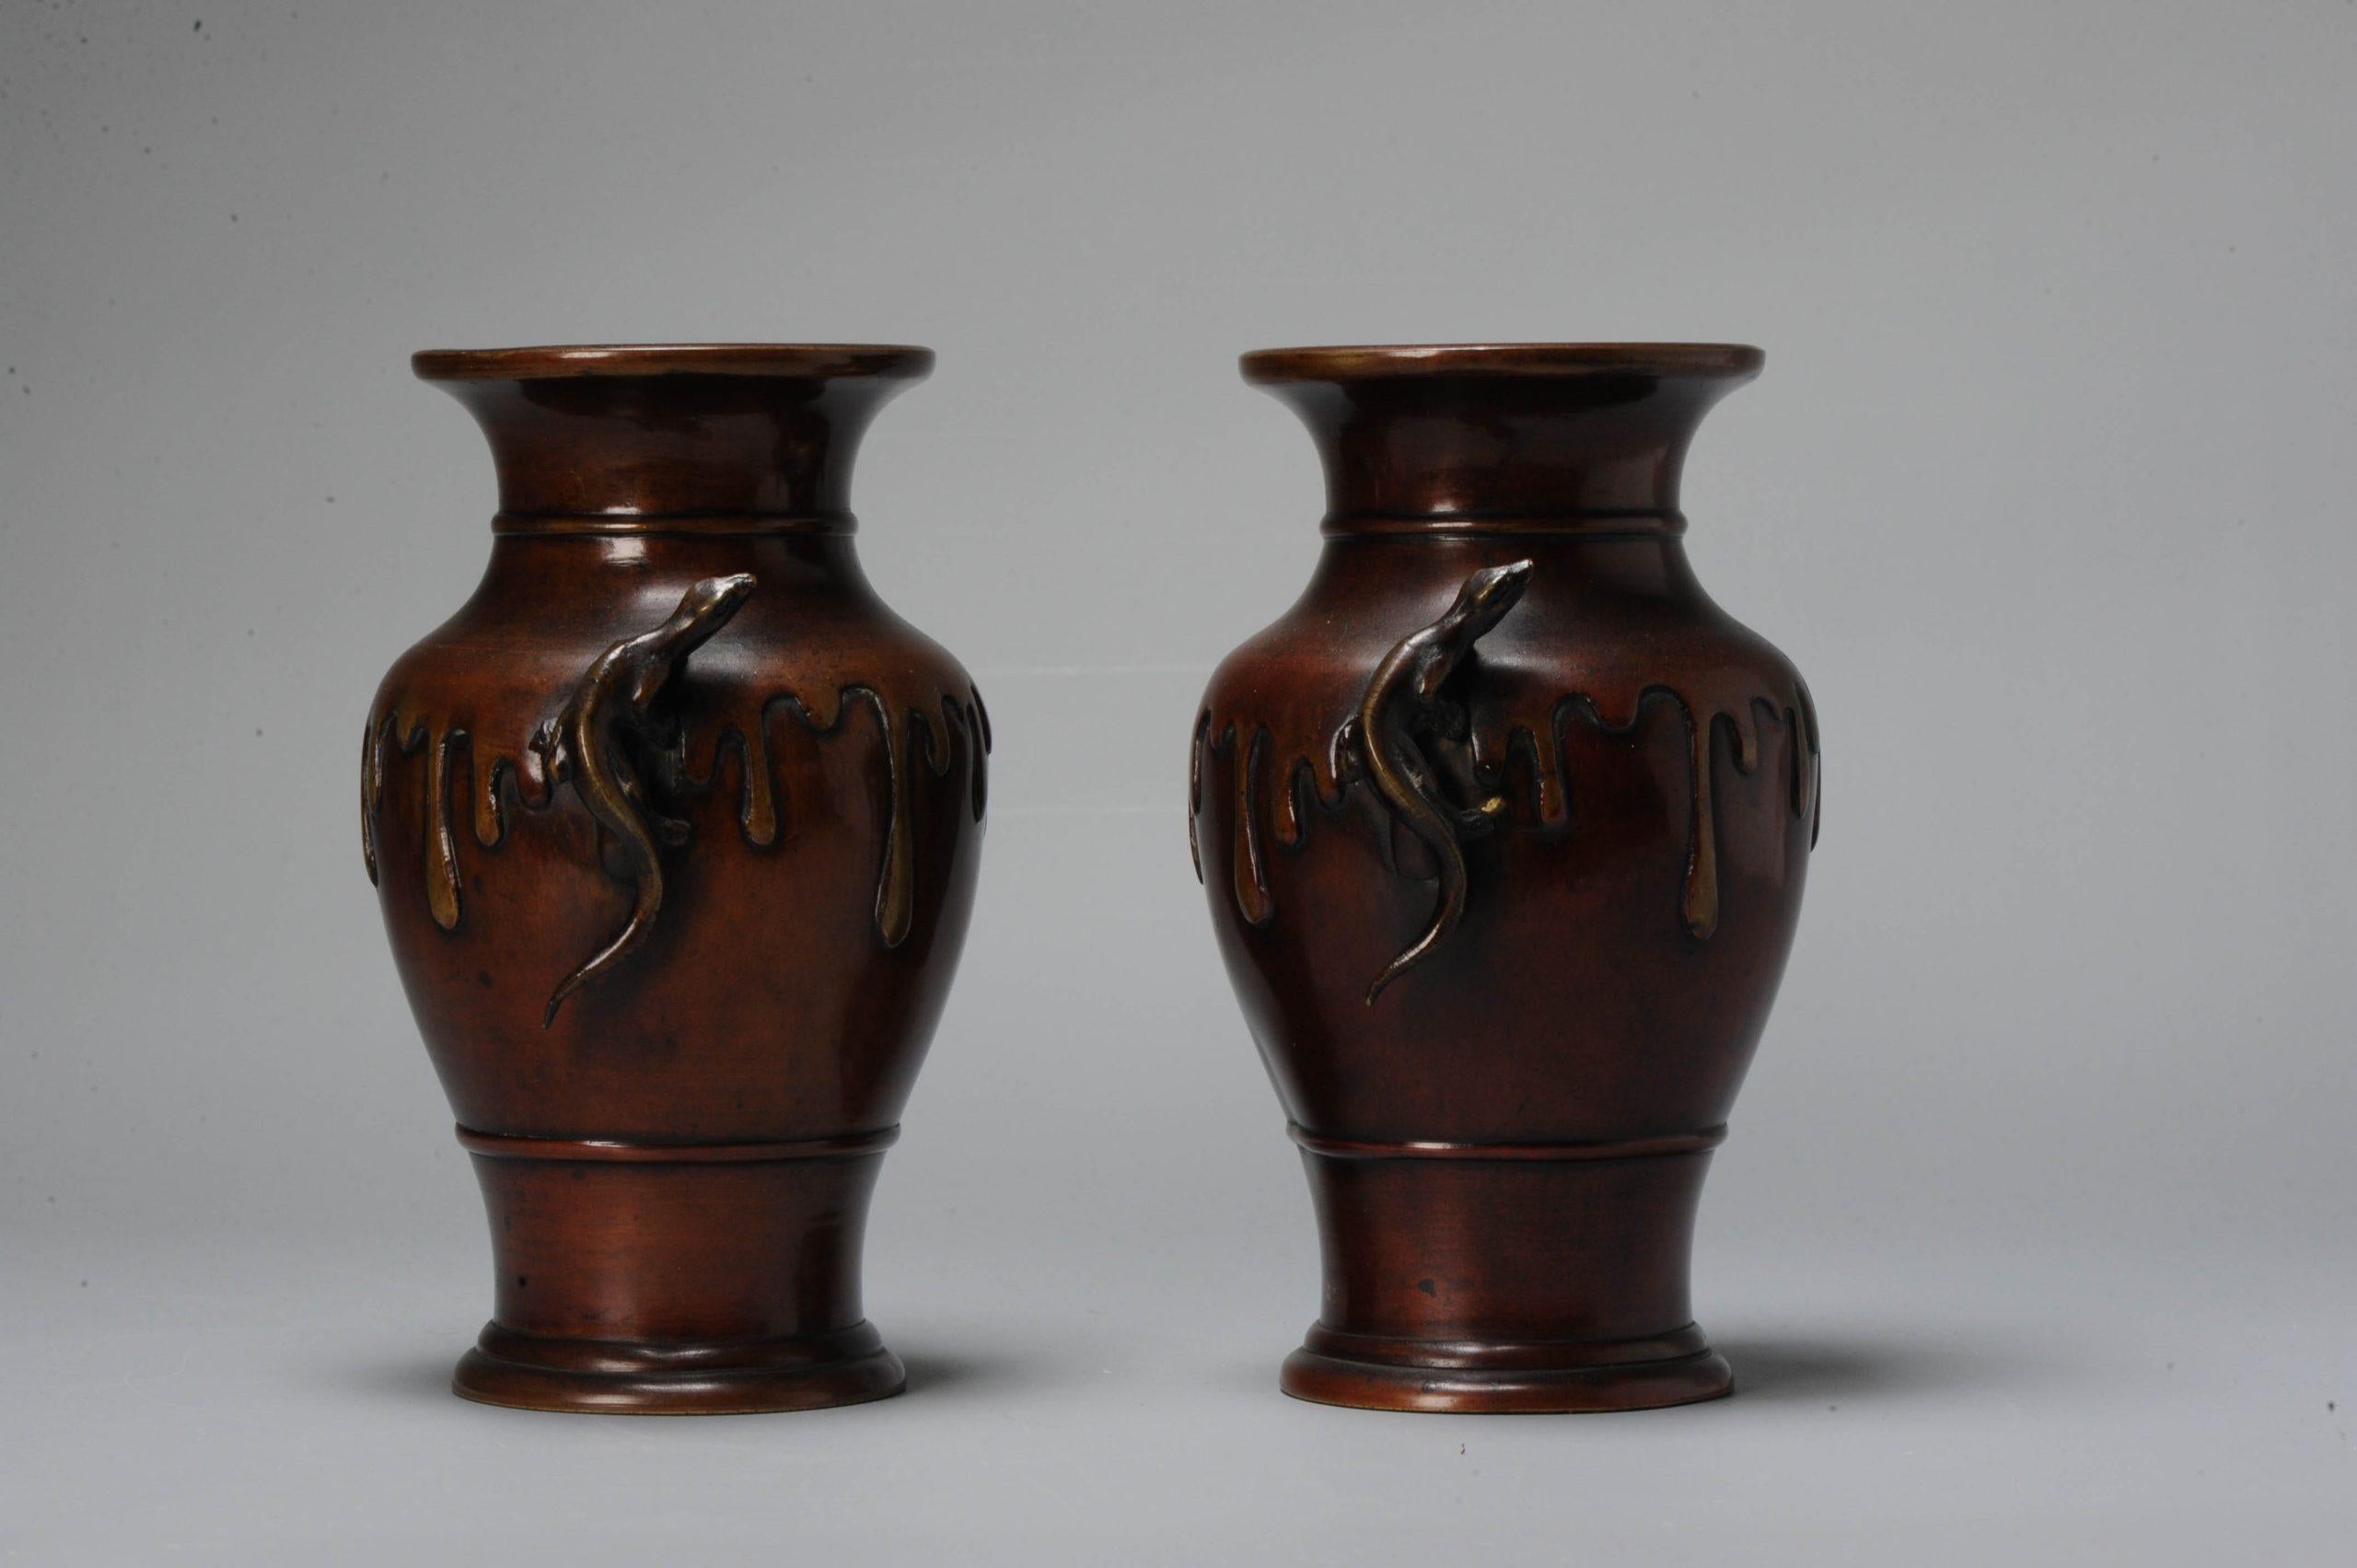 Vases japonais en bronze très artistiques avec un design en goutte d'eau rappelant une jarre débordante. Belle patine. Les poignées sont des salamandres grimpant sur les vases.

Ces pièces sont difficiles à photographier, photos à la lumière